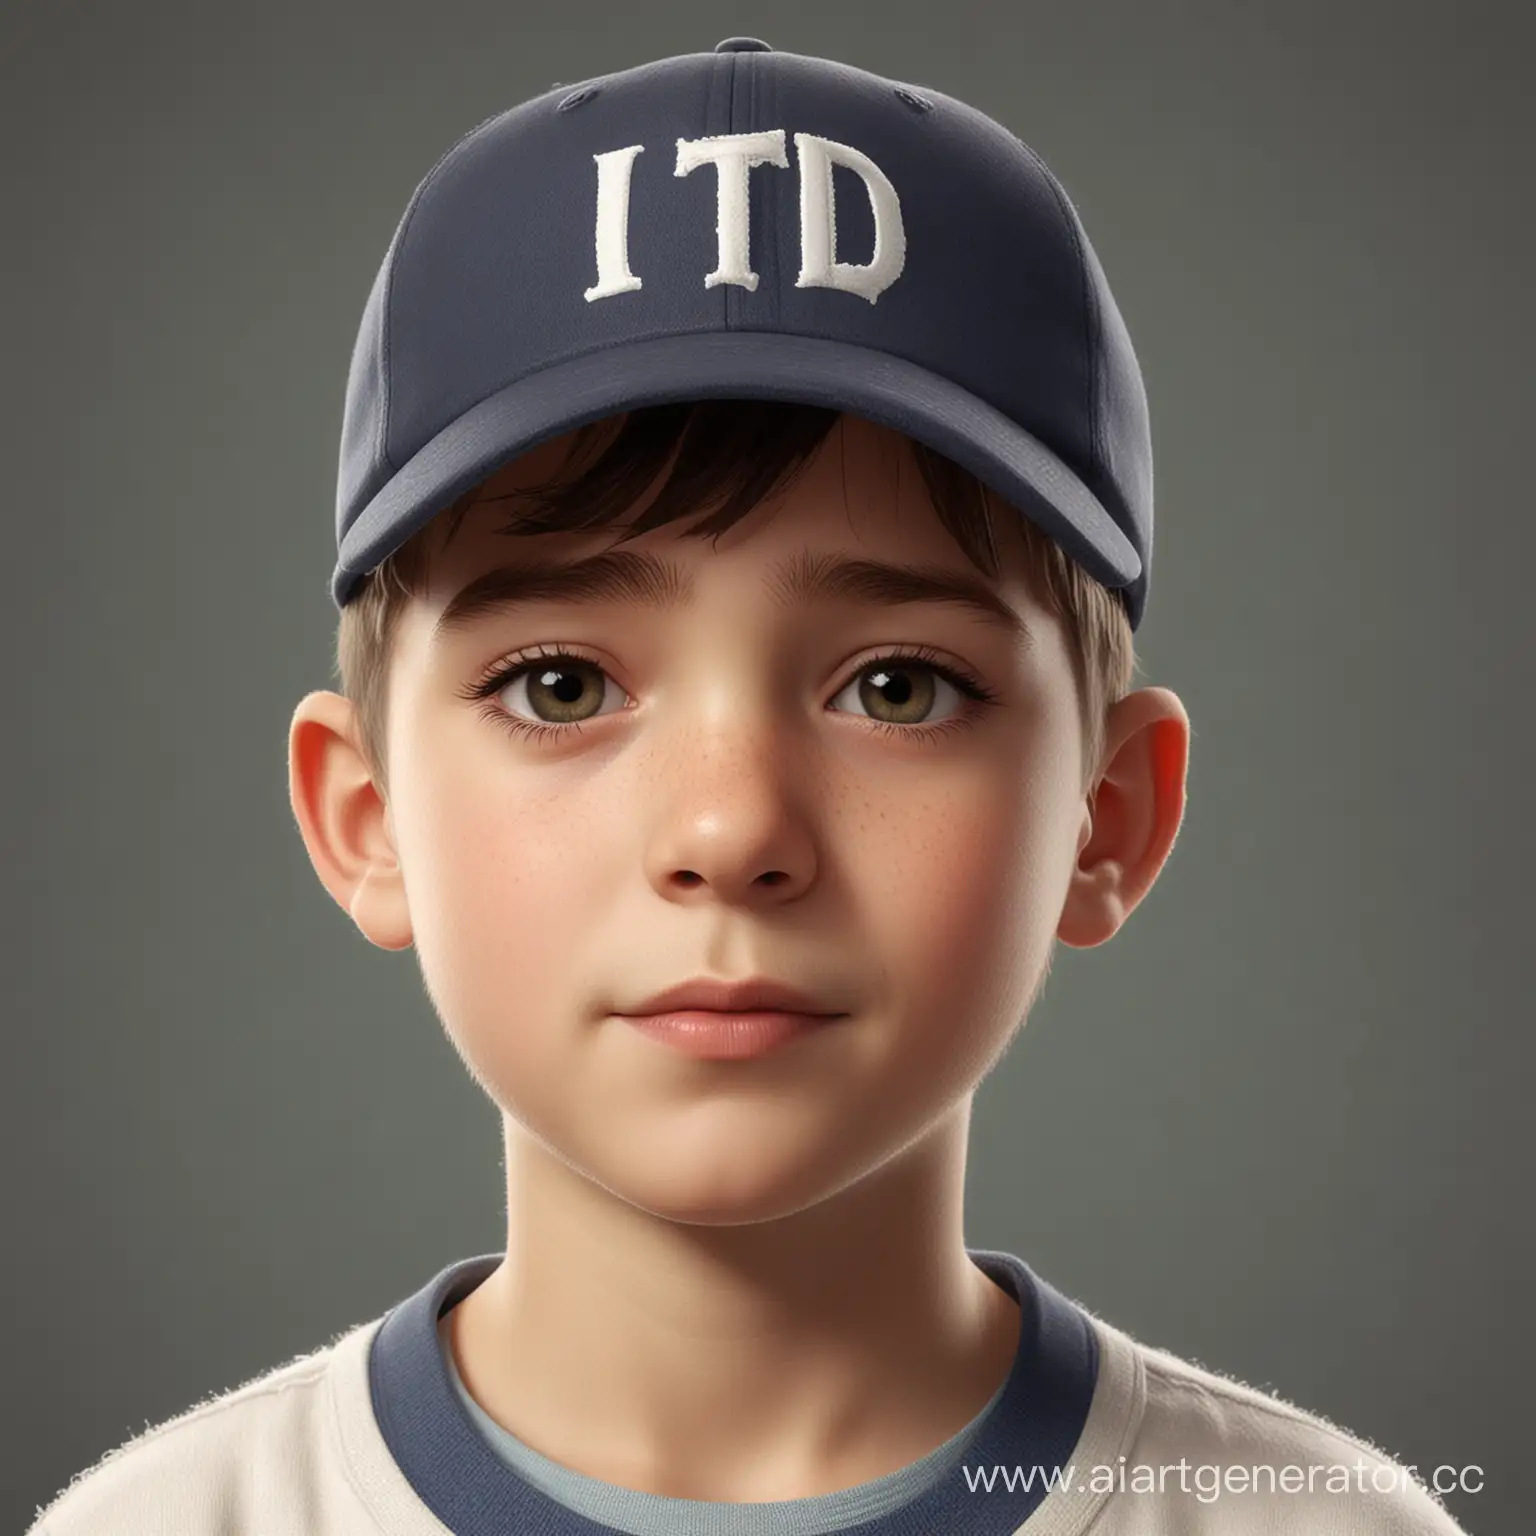 Портрет мальчика в бейсболке. На бейсболке надпись: "ITD" Стиль - мультипликация
